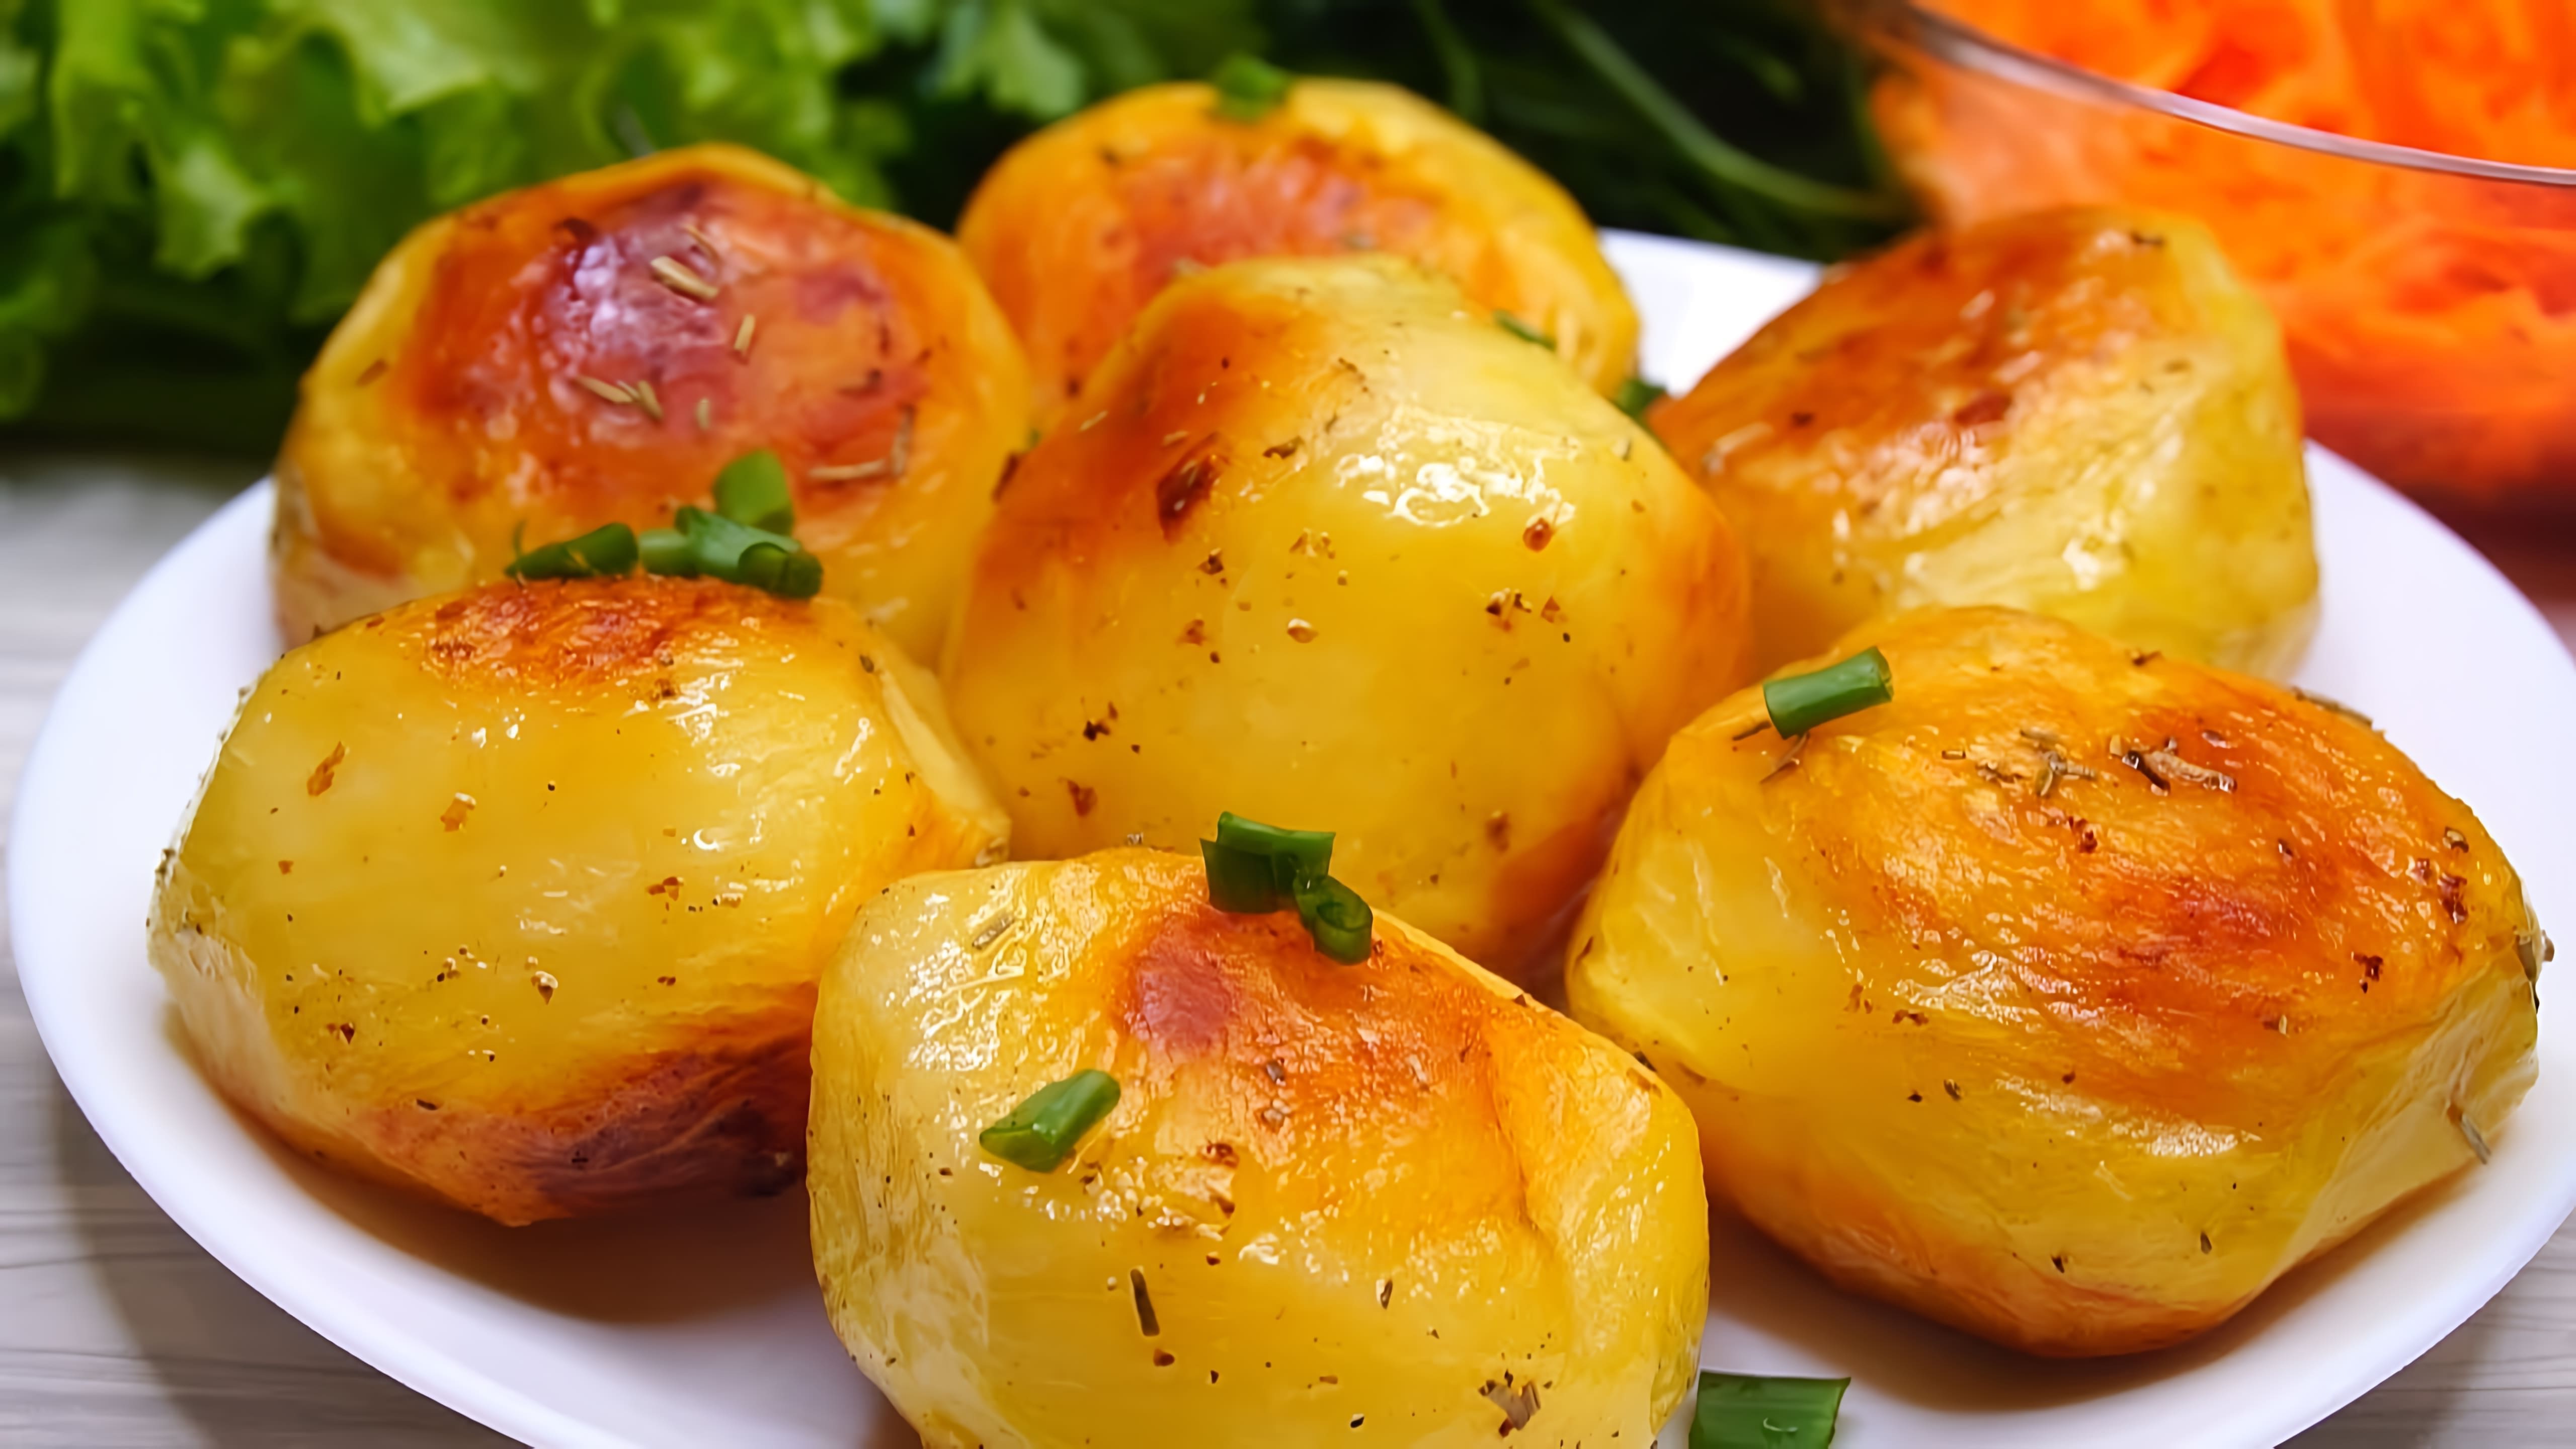 В этом видео демонстрируется рецепт приготовления картофеля в духовке с хрустящей корочкой